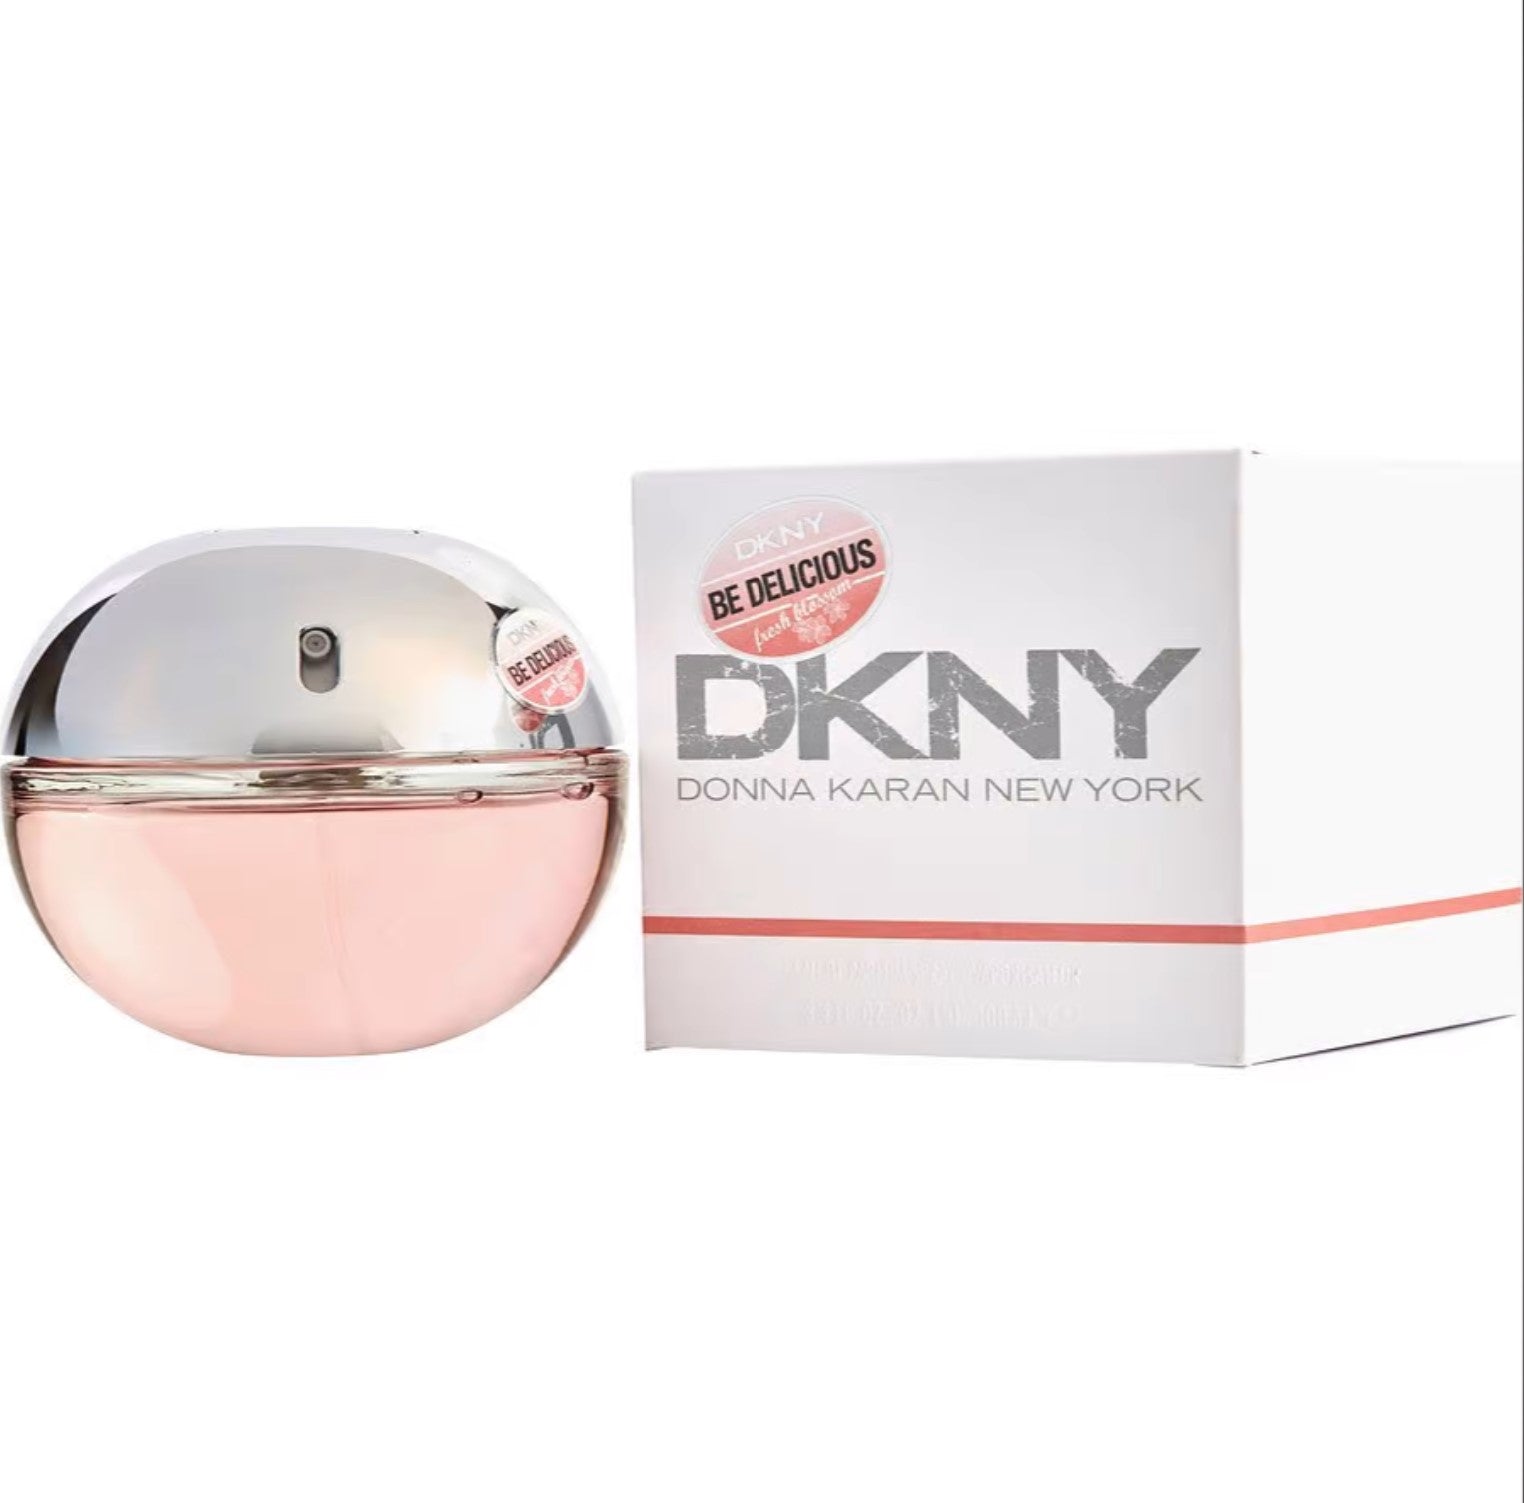 Туалетная вода каре. DKNY духи Fresh Blossom. DKNY be delicious Fresh Blossom (Donna Karan) 100мл. Be delicious Fresh (Donna Karan) 100мл. Туалетная вода Донна Каран Нью-Йорк.